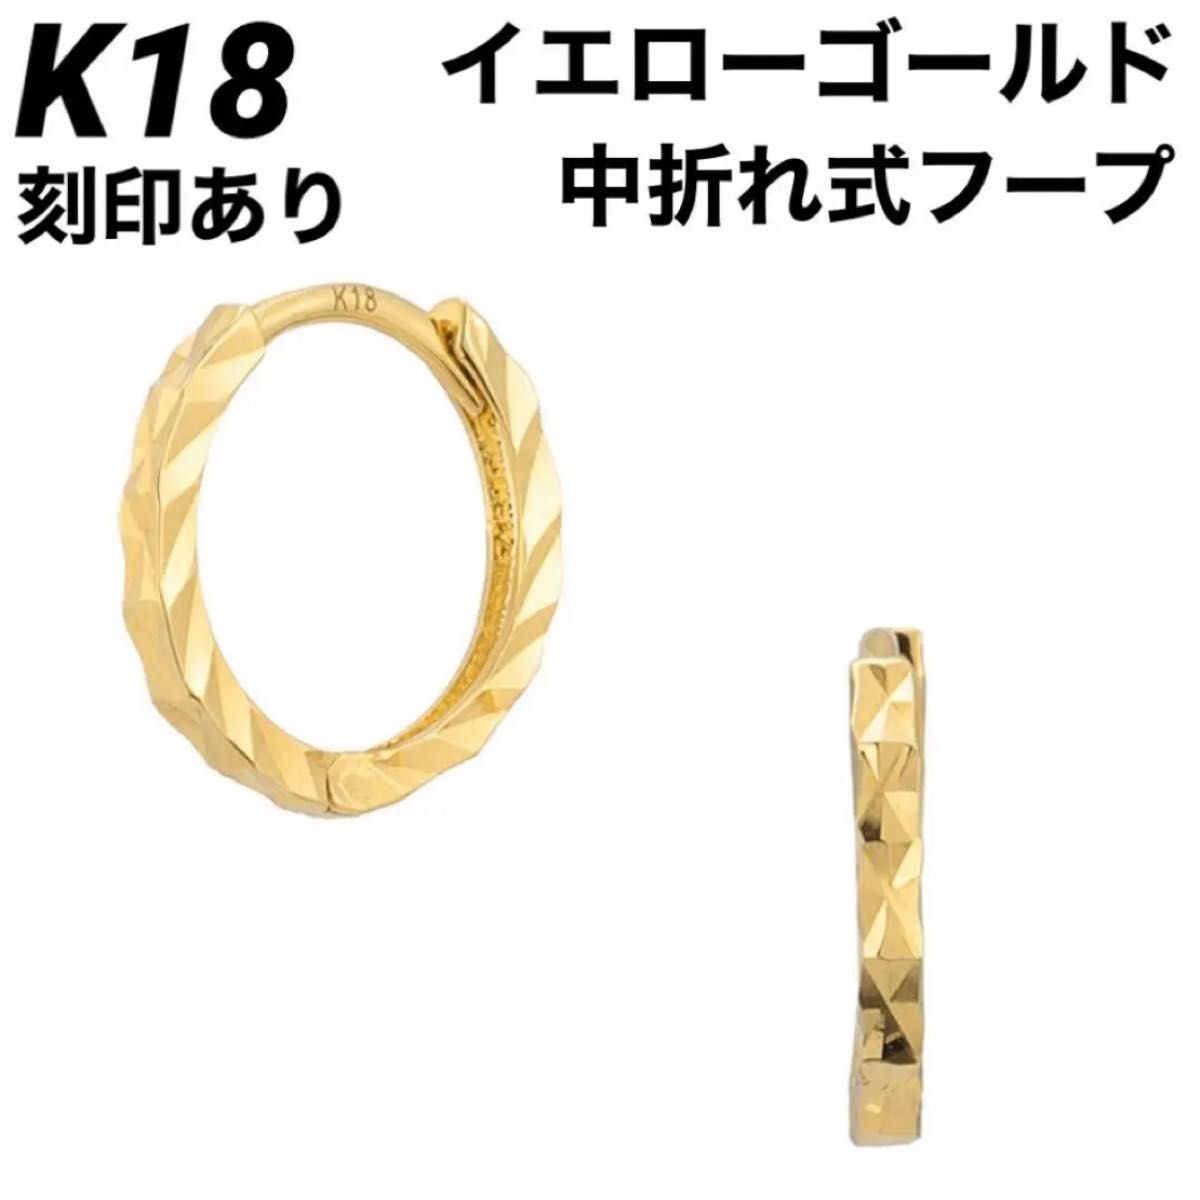 新品 K18 中折れ式 フープ イエローゴールド ダイヤモンドカット 18金